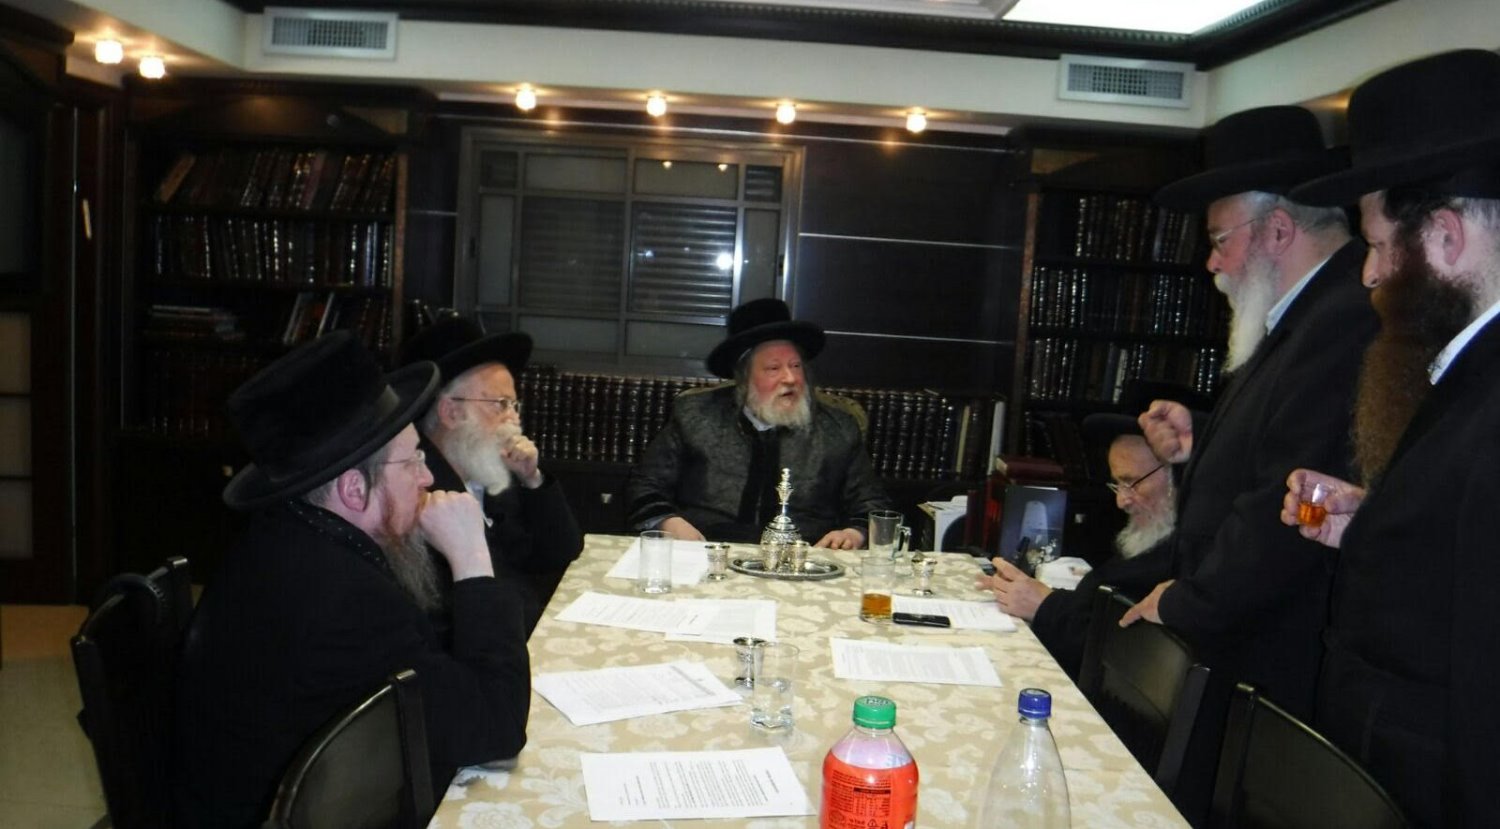 פגישת הרבנים בשבוע שעבר באשדוד (צילום: דודו חן)